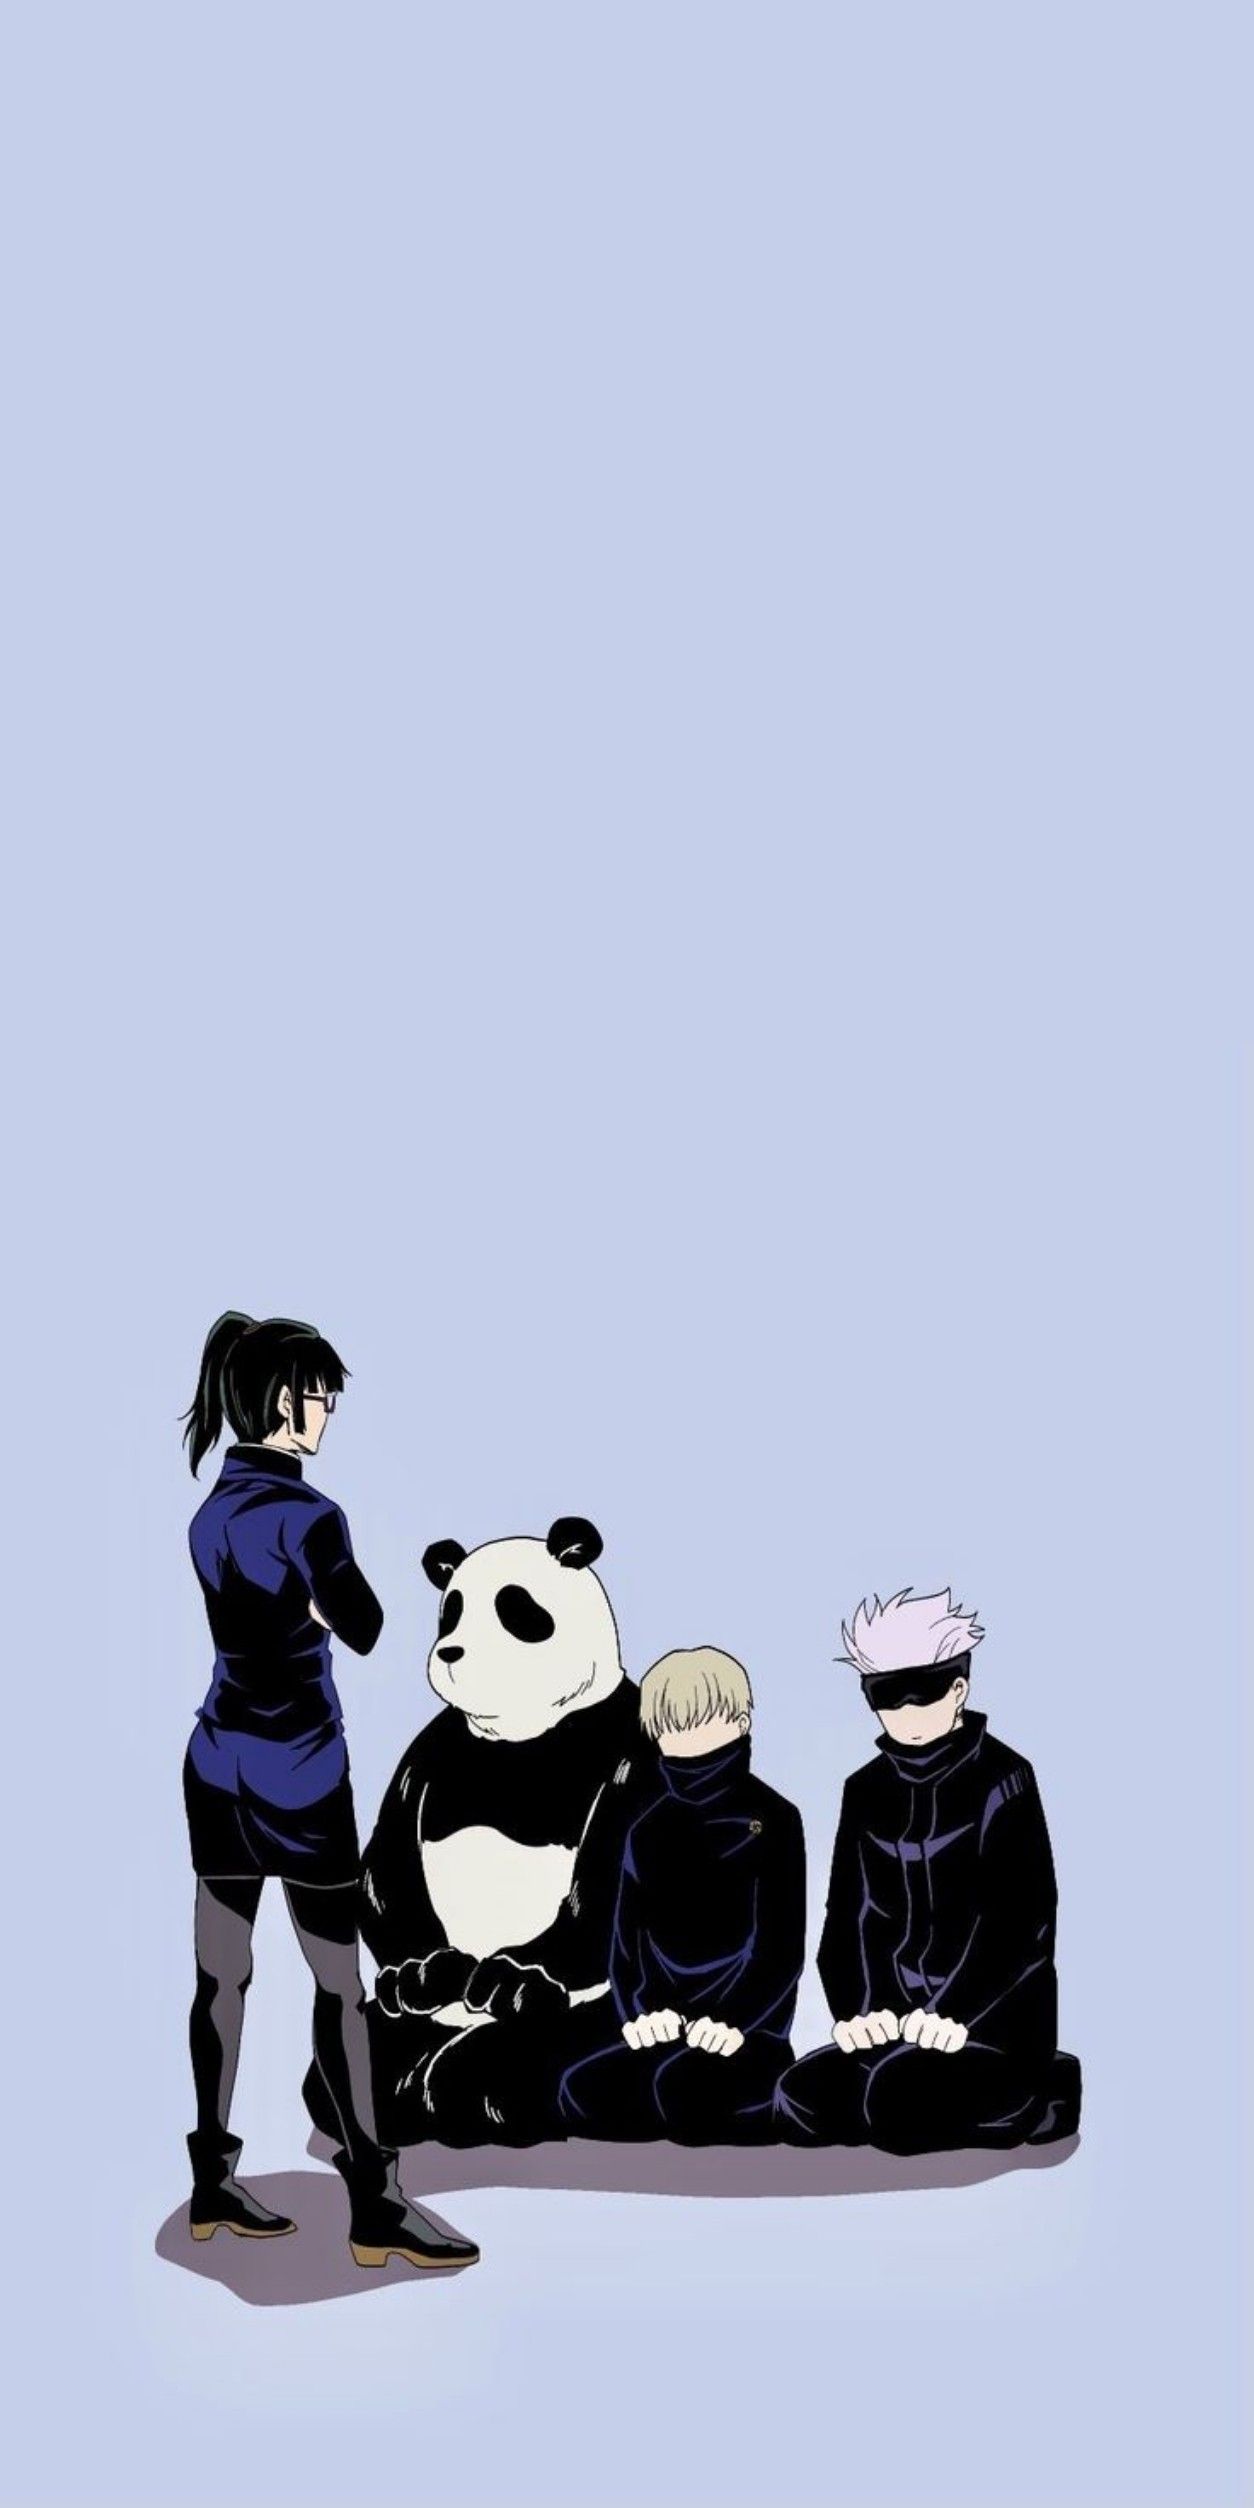 Jujutsu kaisen. Jujutsu kaisen wallpaper, Panda jujutsu kaisen, Jujutsu kaisen panda